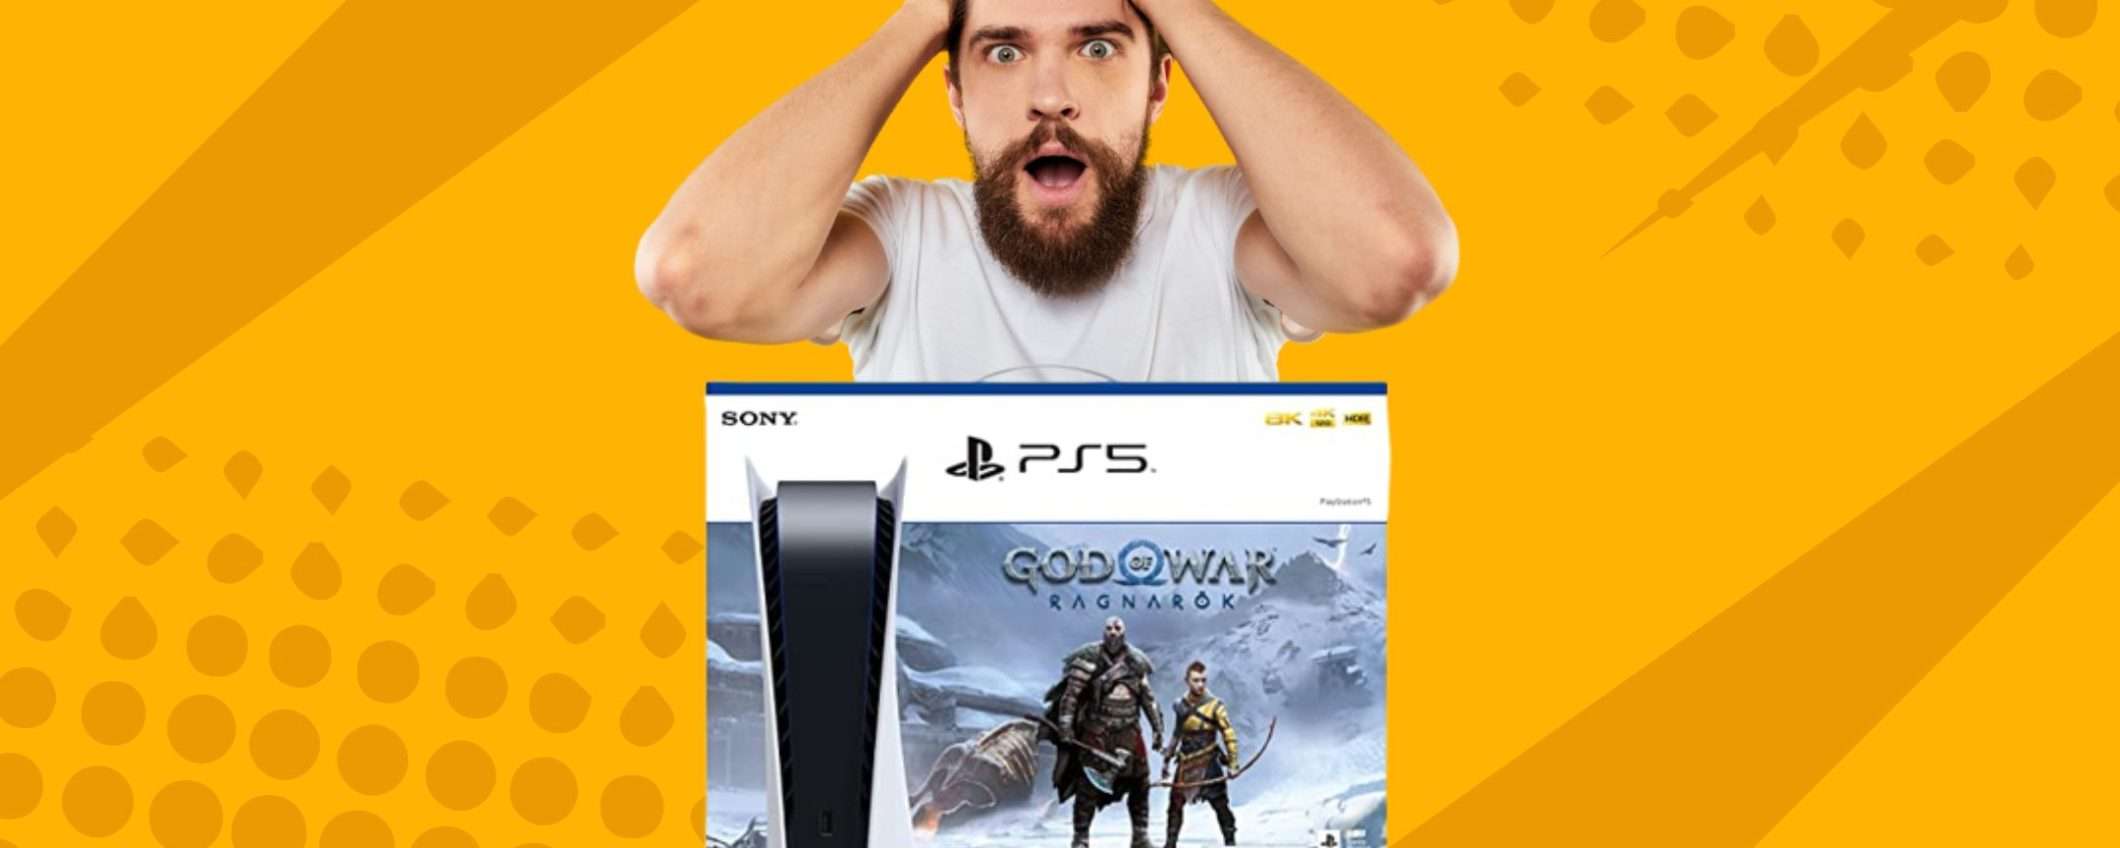 Playstation 5 + God of War Ragnarök: ULTIMA occasione per acquistarla